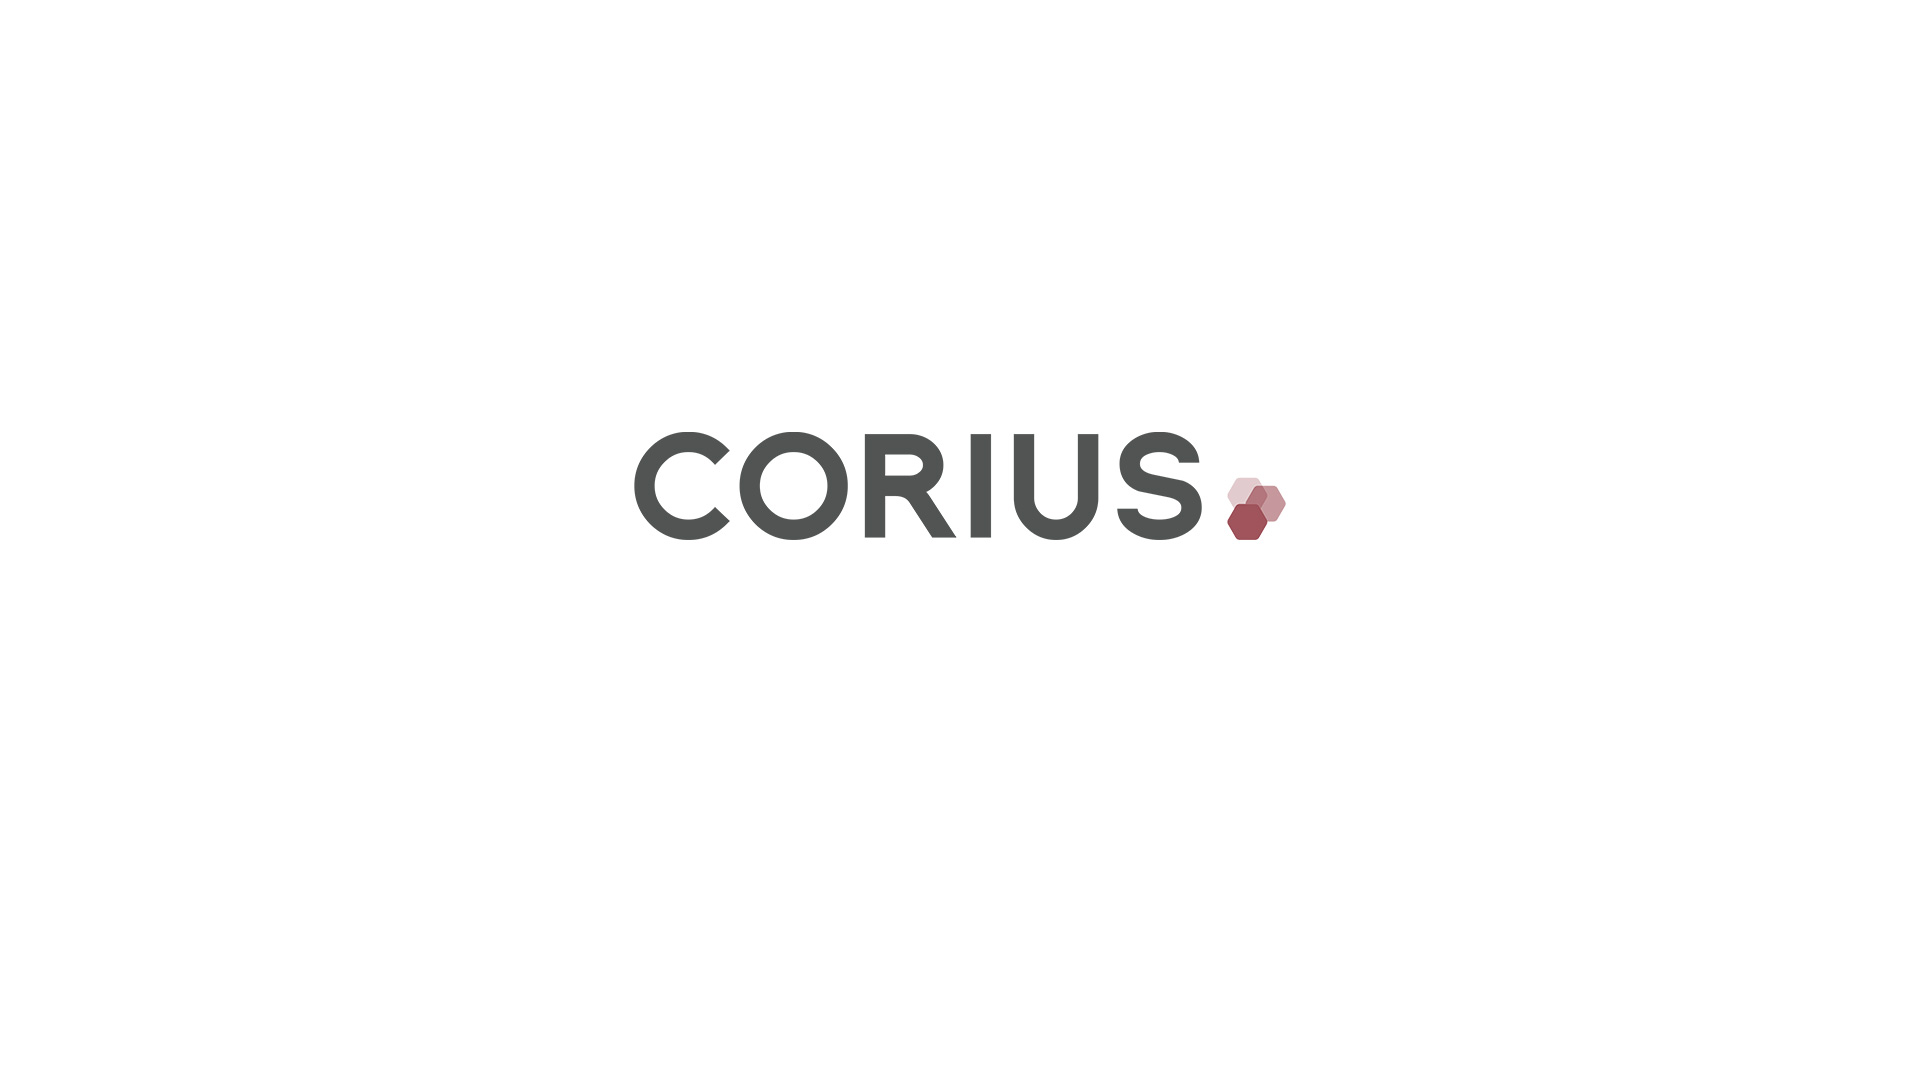 CORIUS Gruppe